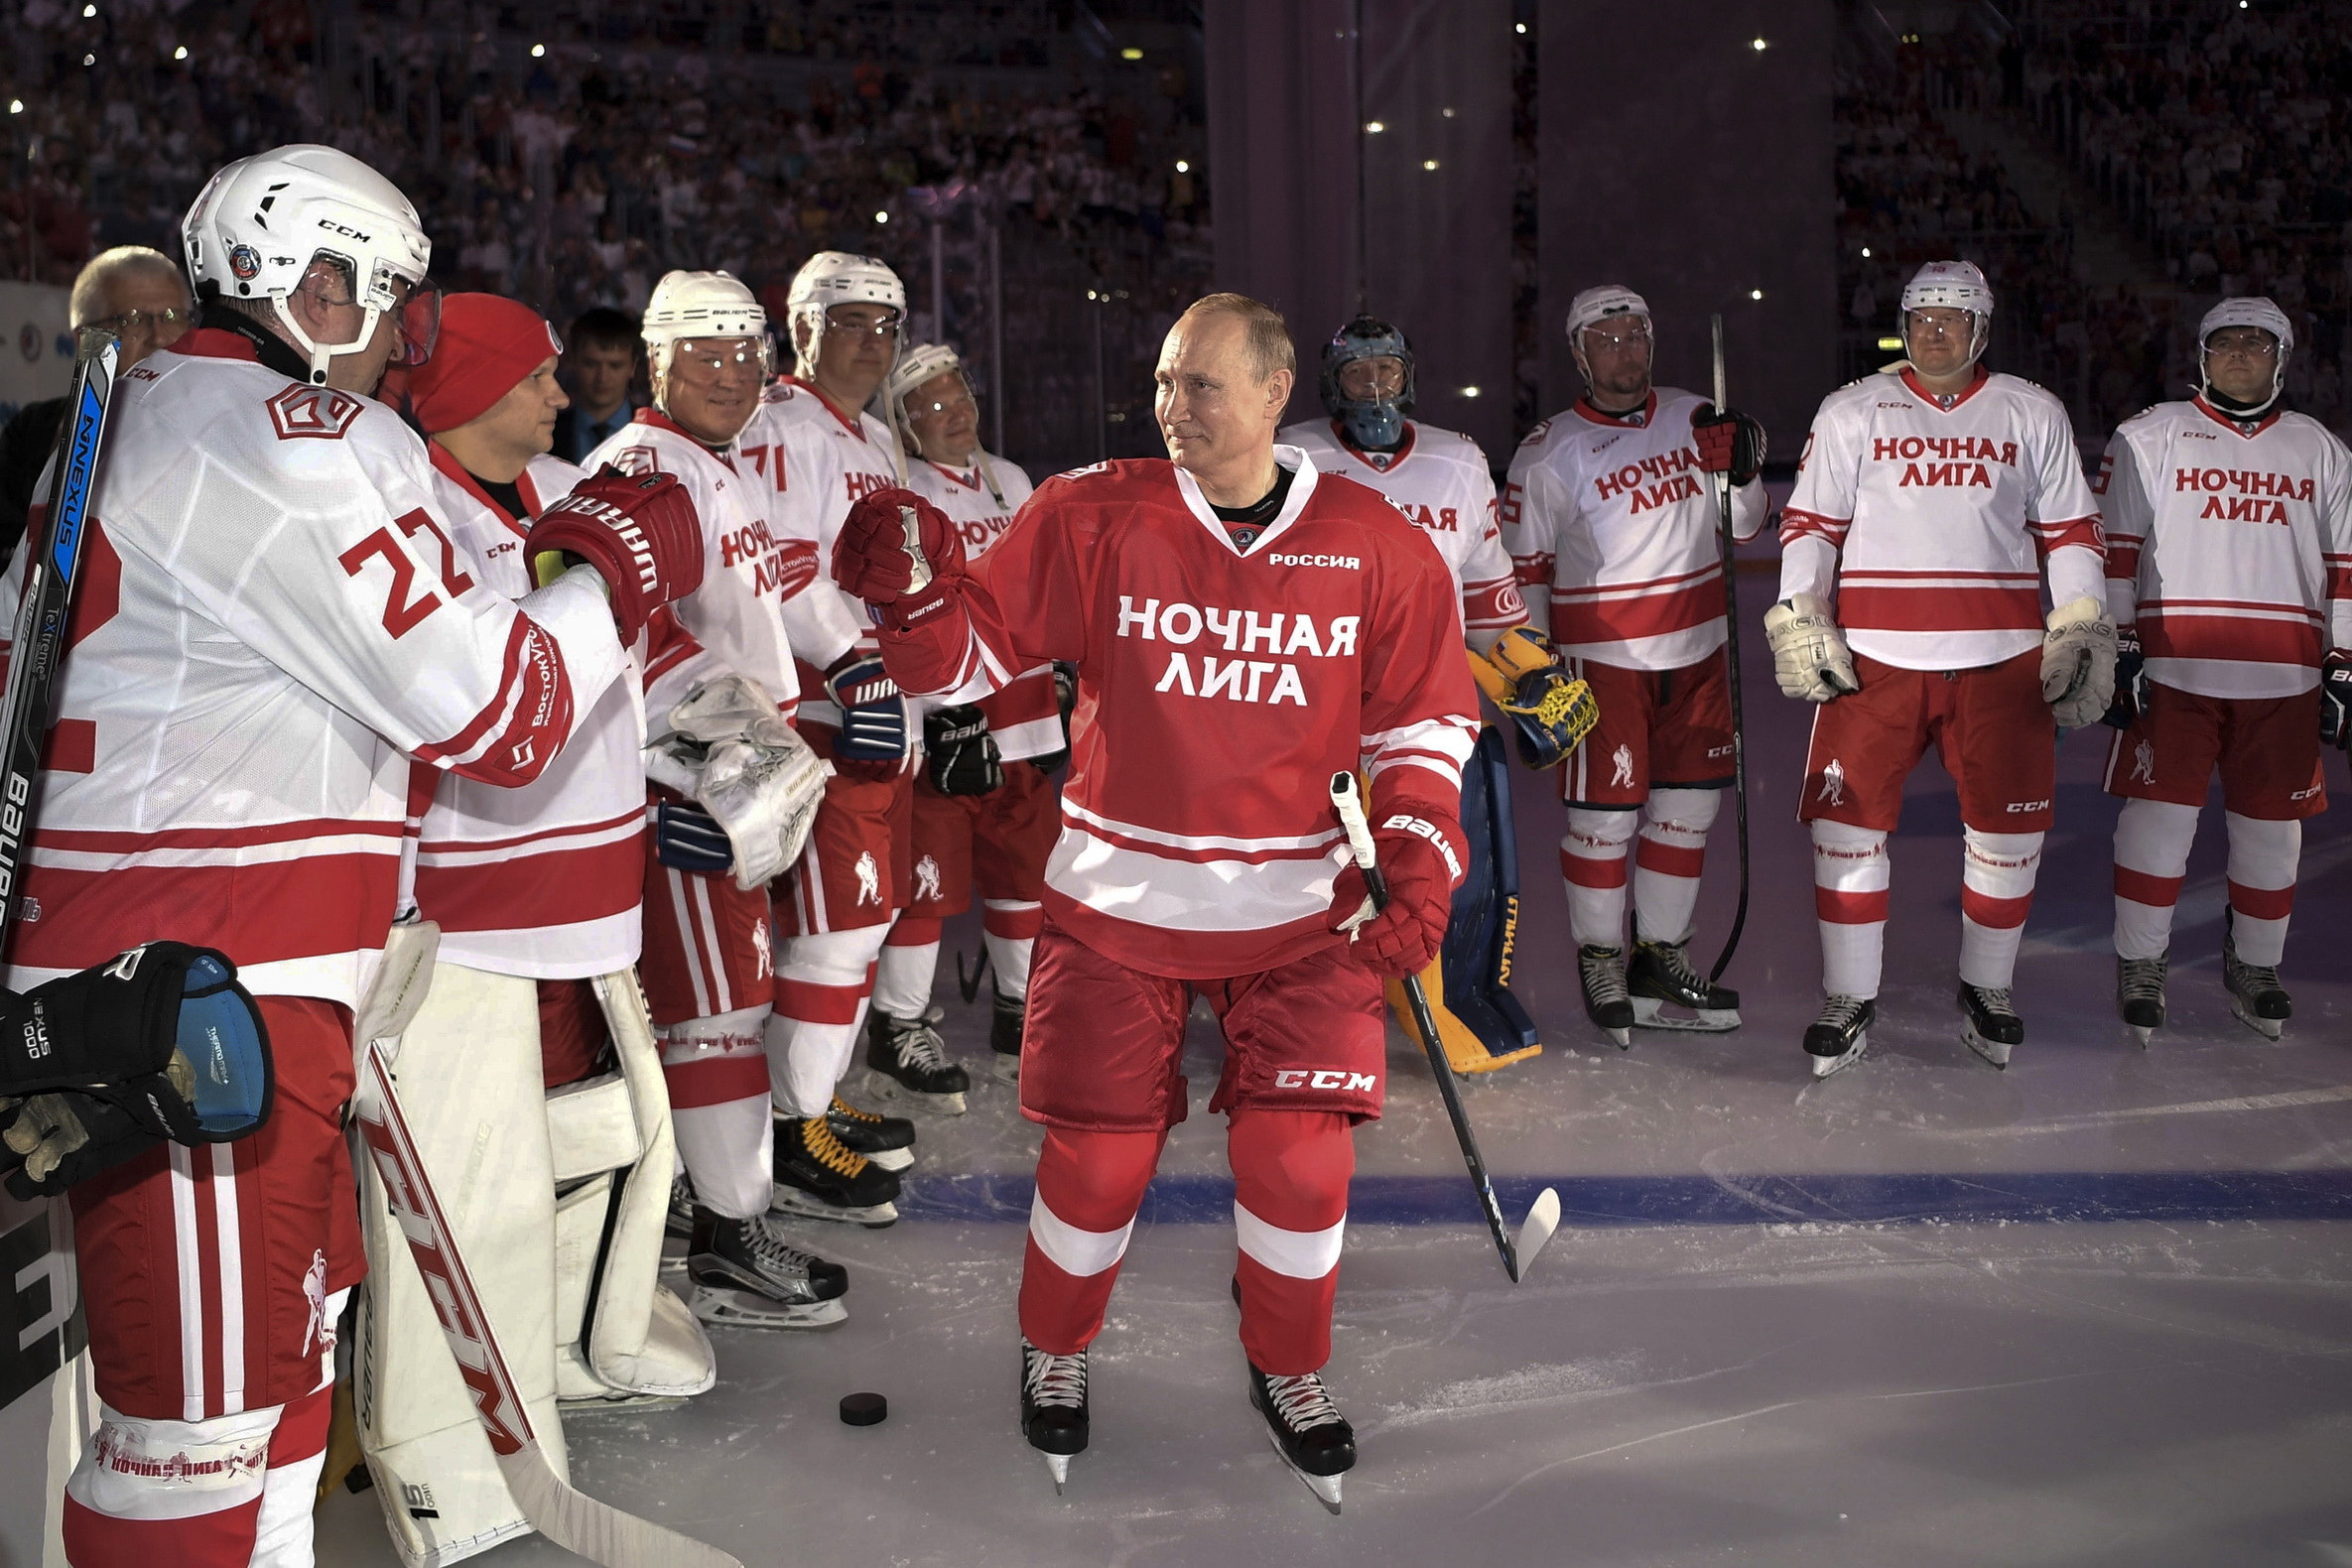 Putinovih pet golova u meču sa bivšim zvezdama NHL lige